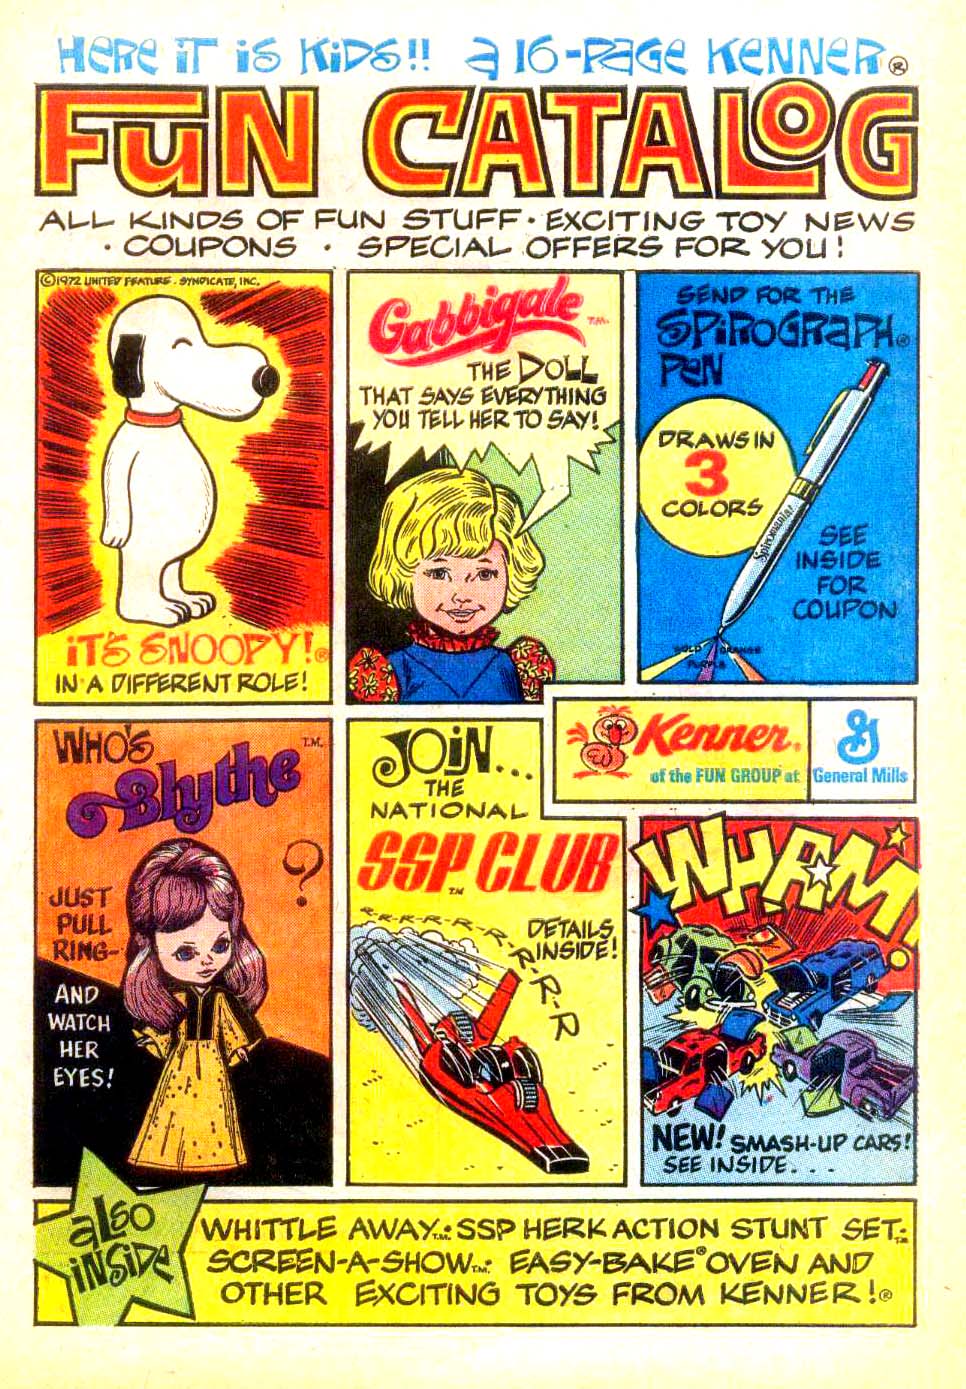 1972 Kenner Fun Catalog (1)